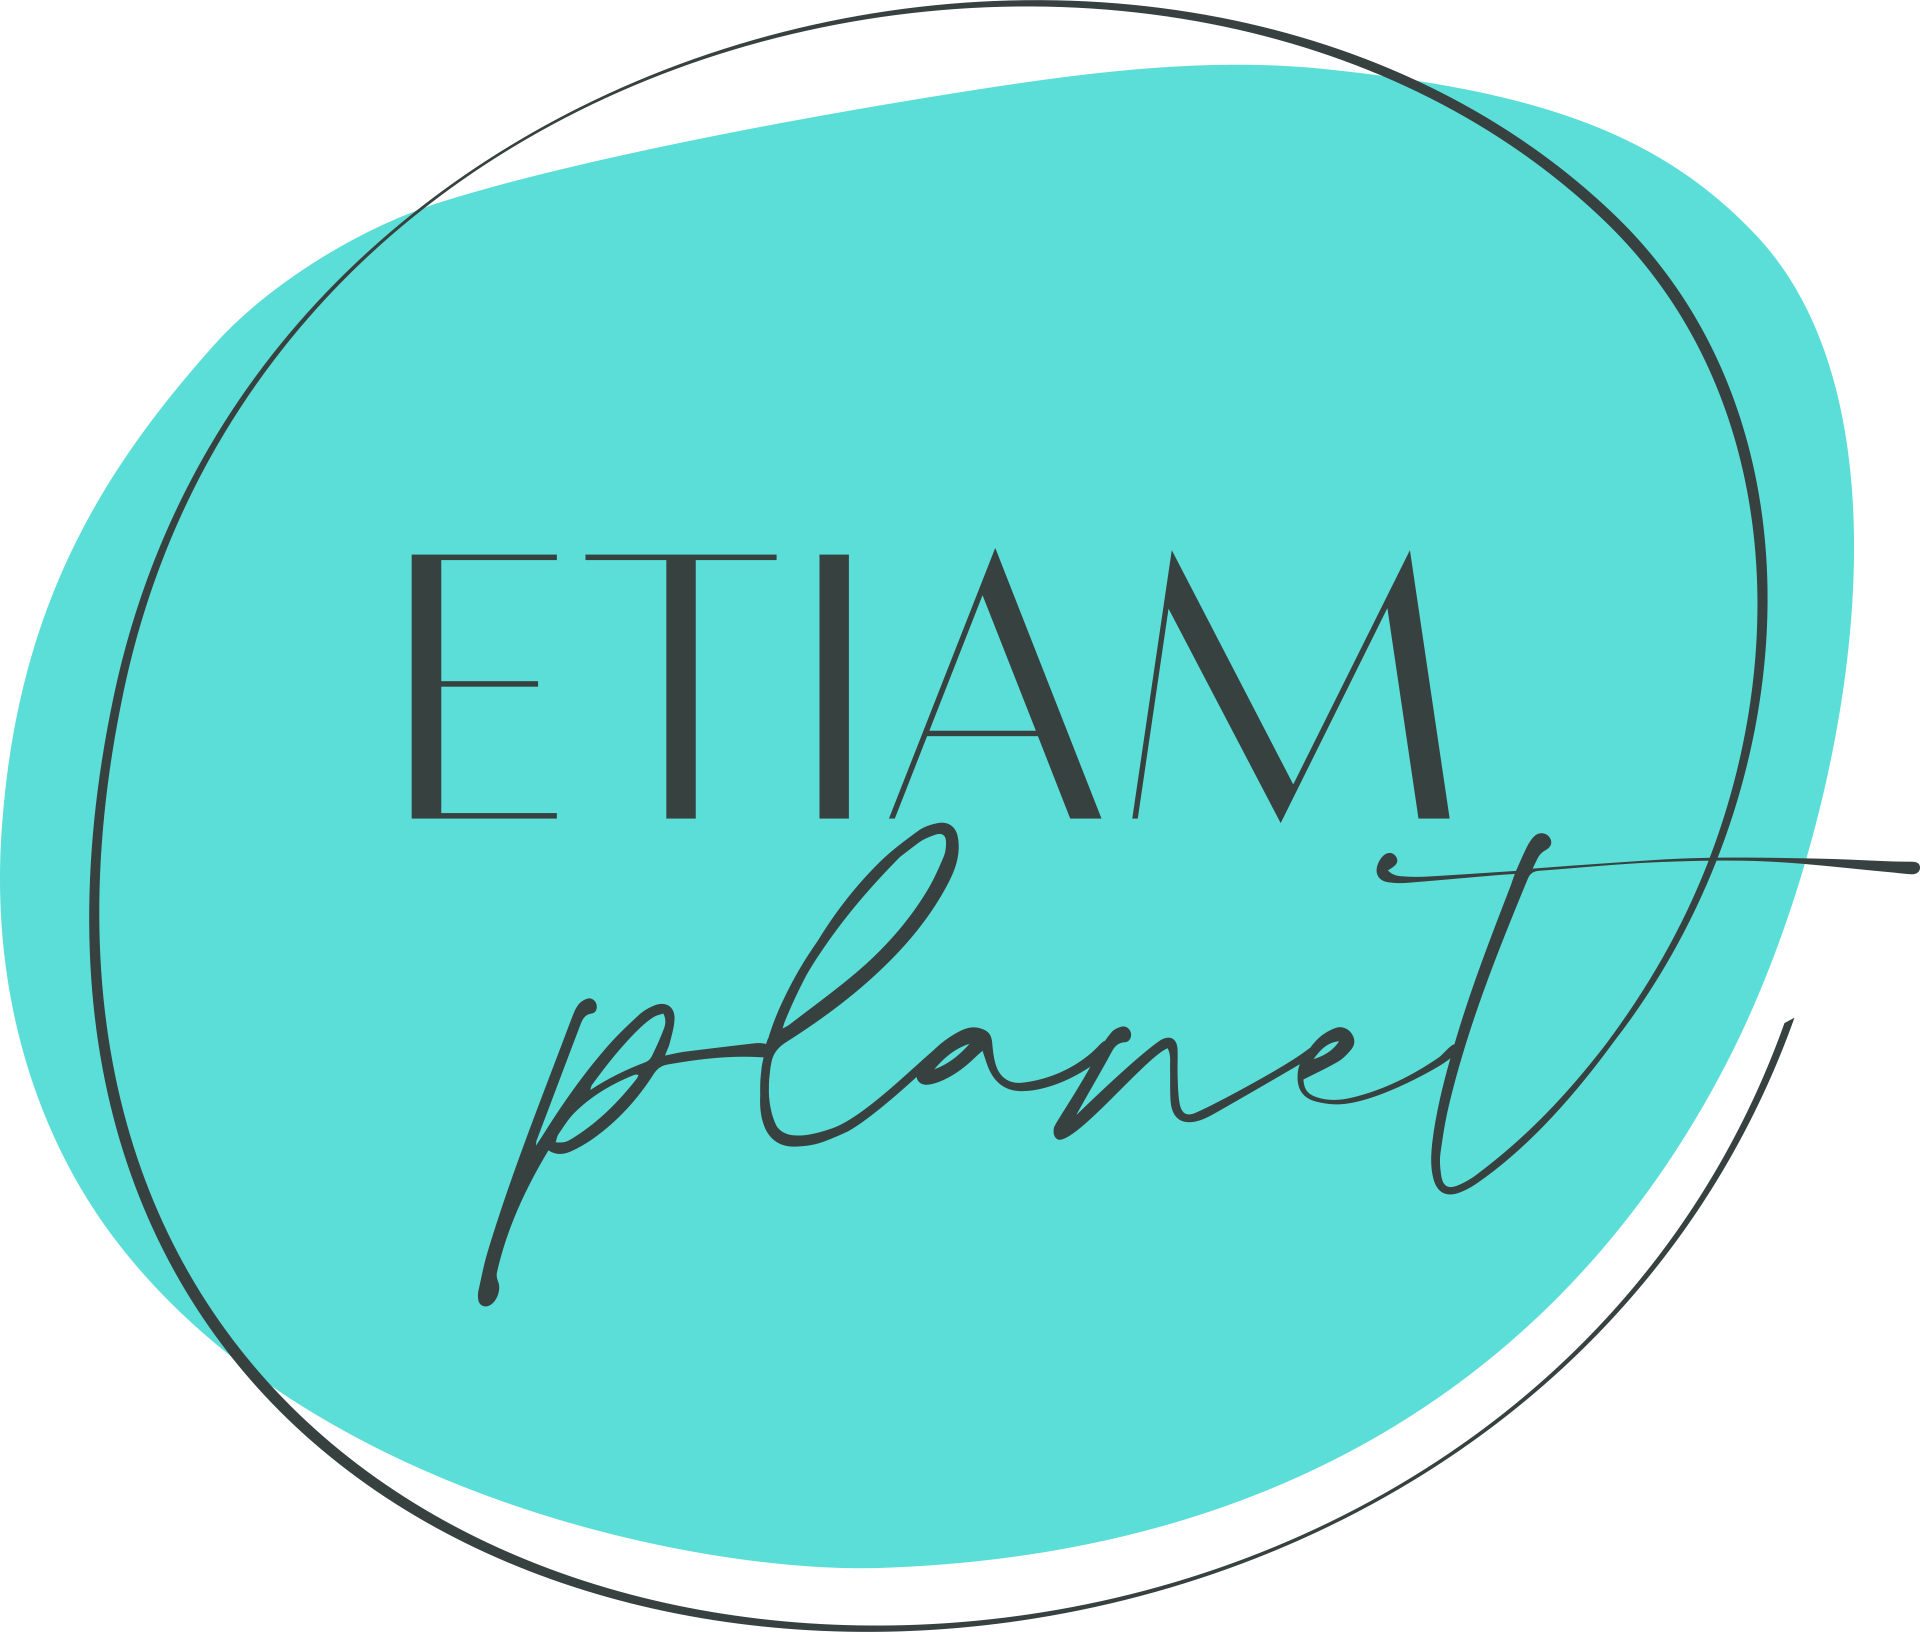 Etiam-planet_logo-2